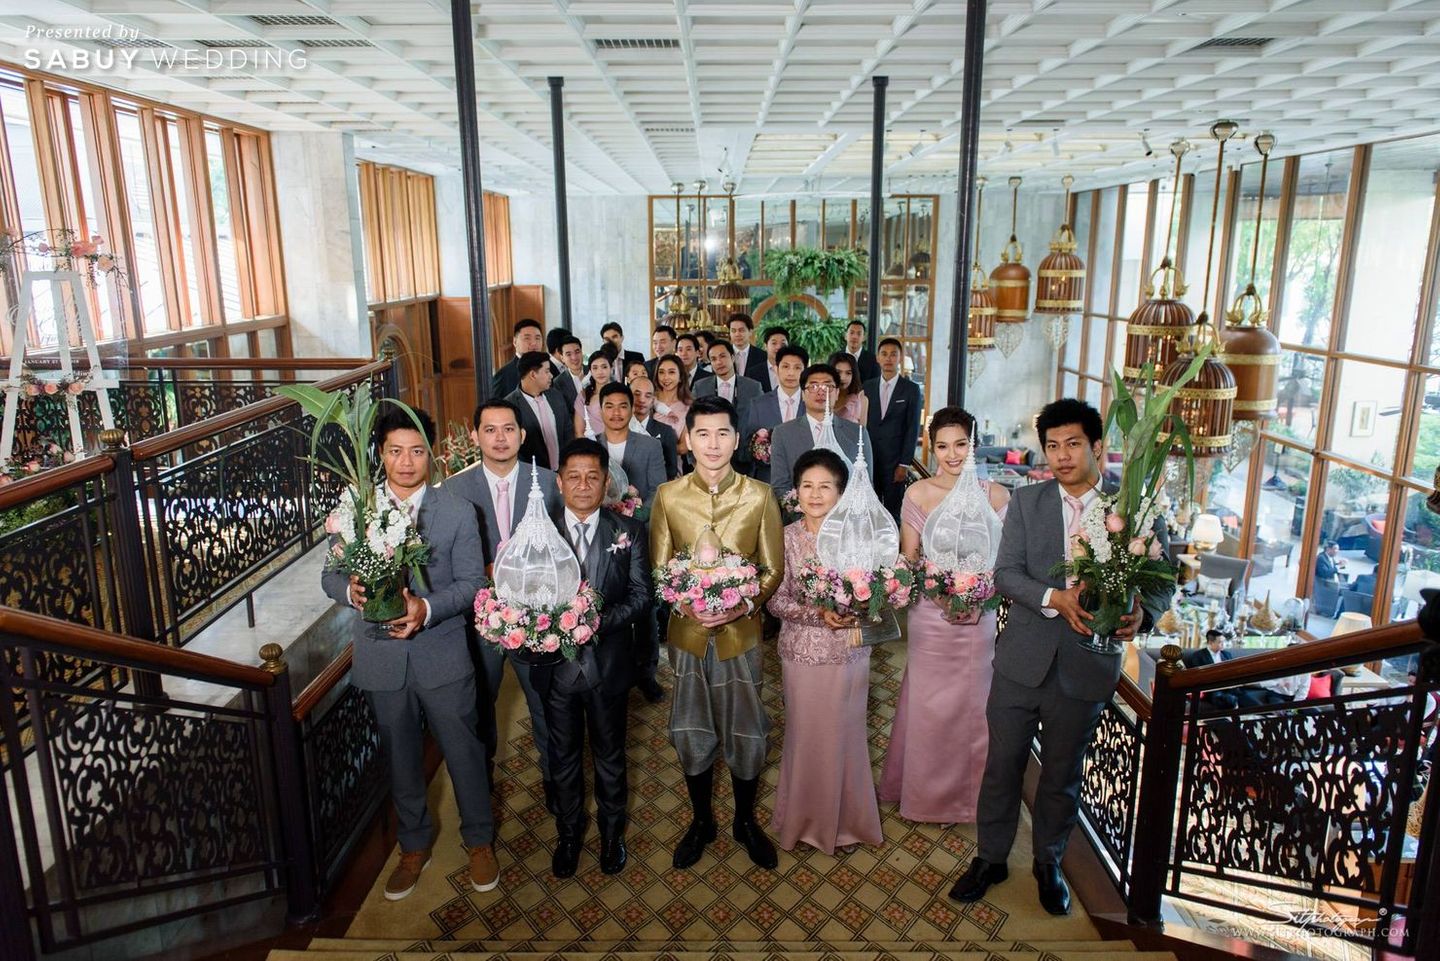 งานแต่งงาน,พิธีแต่งงานแบบไทย,สถานที่แต่งงาน,โรงแรม,แห่ขันหมาก,ขบวนขันหมาก รีวิวงานแต่งสุดอบอุ่นแห่งปี ‘We are Family’ งานนี้ห้อมล้อมด้วยรัก @Mandarin Oriental